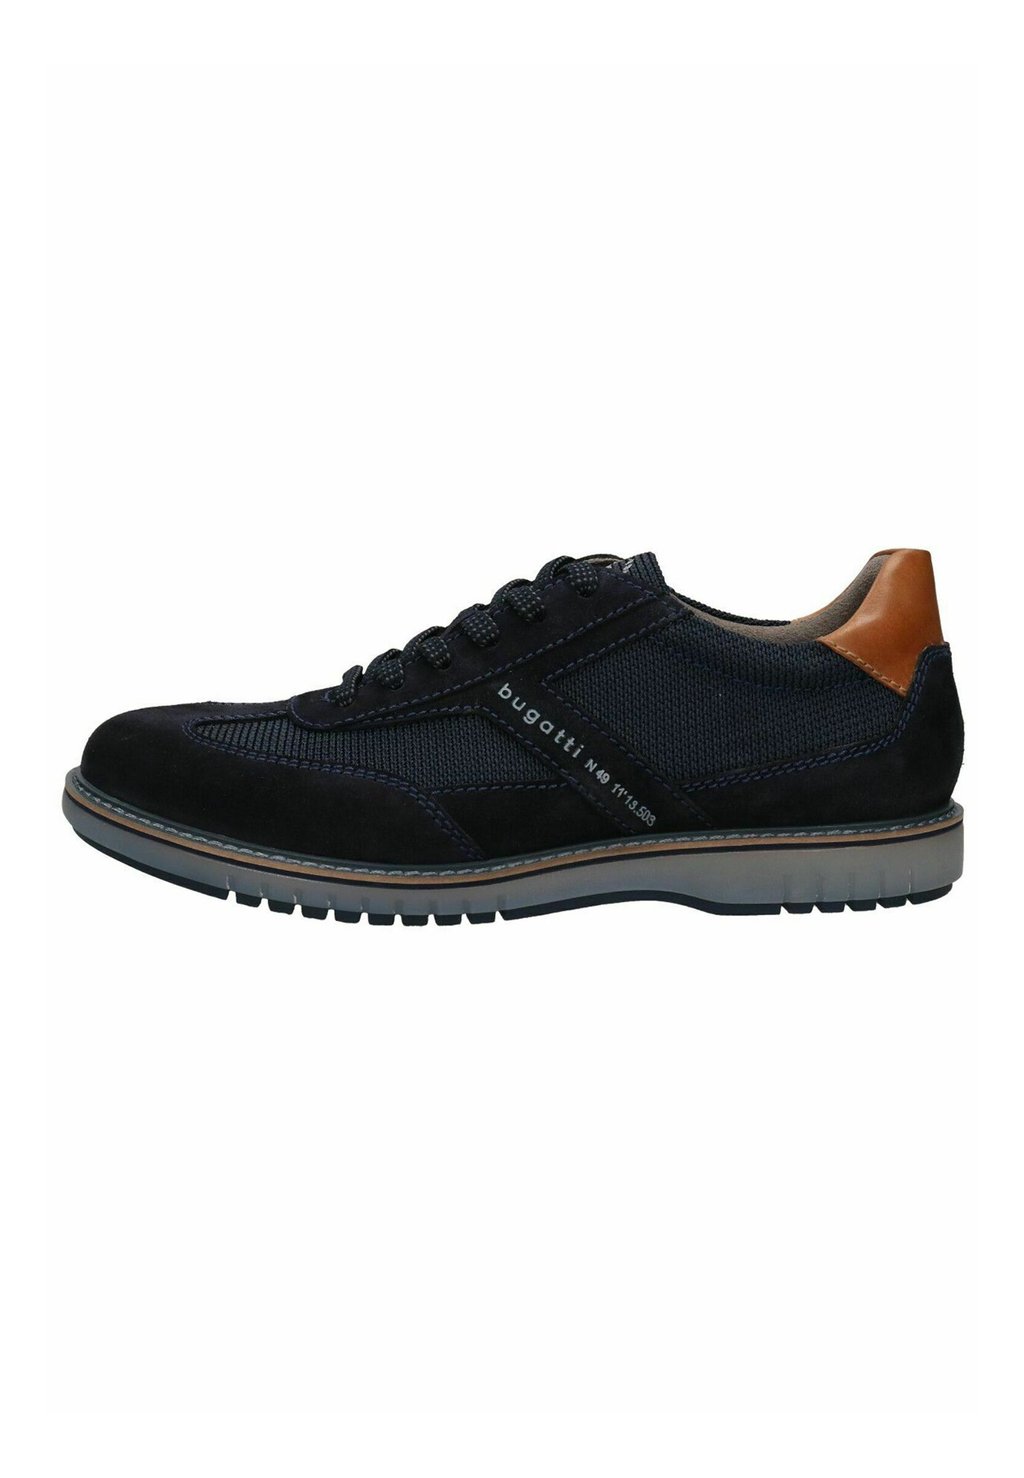 Спортивные туфли на шнуровке DERBIES bugatti, цвет dark blue dark blue